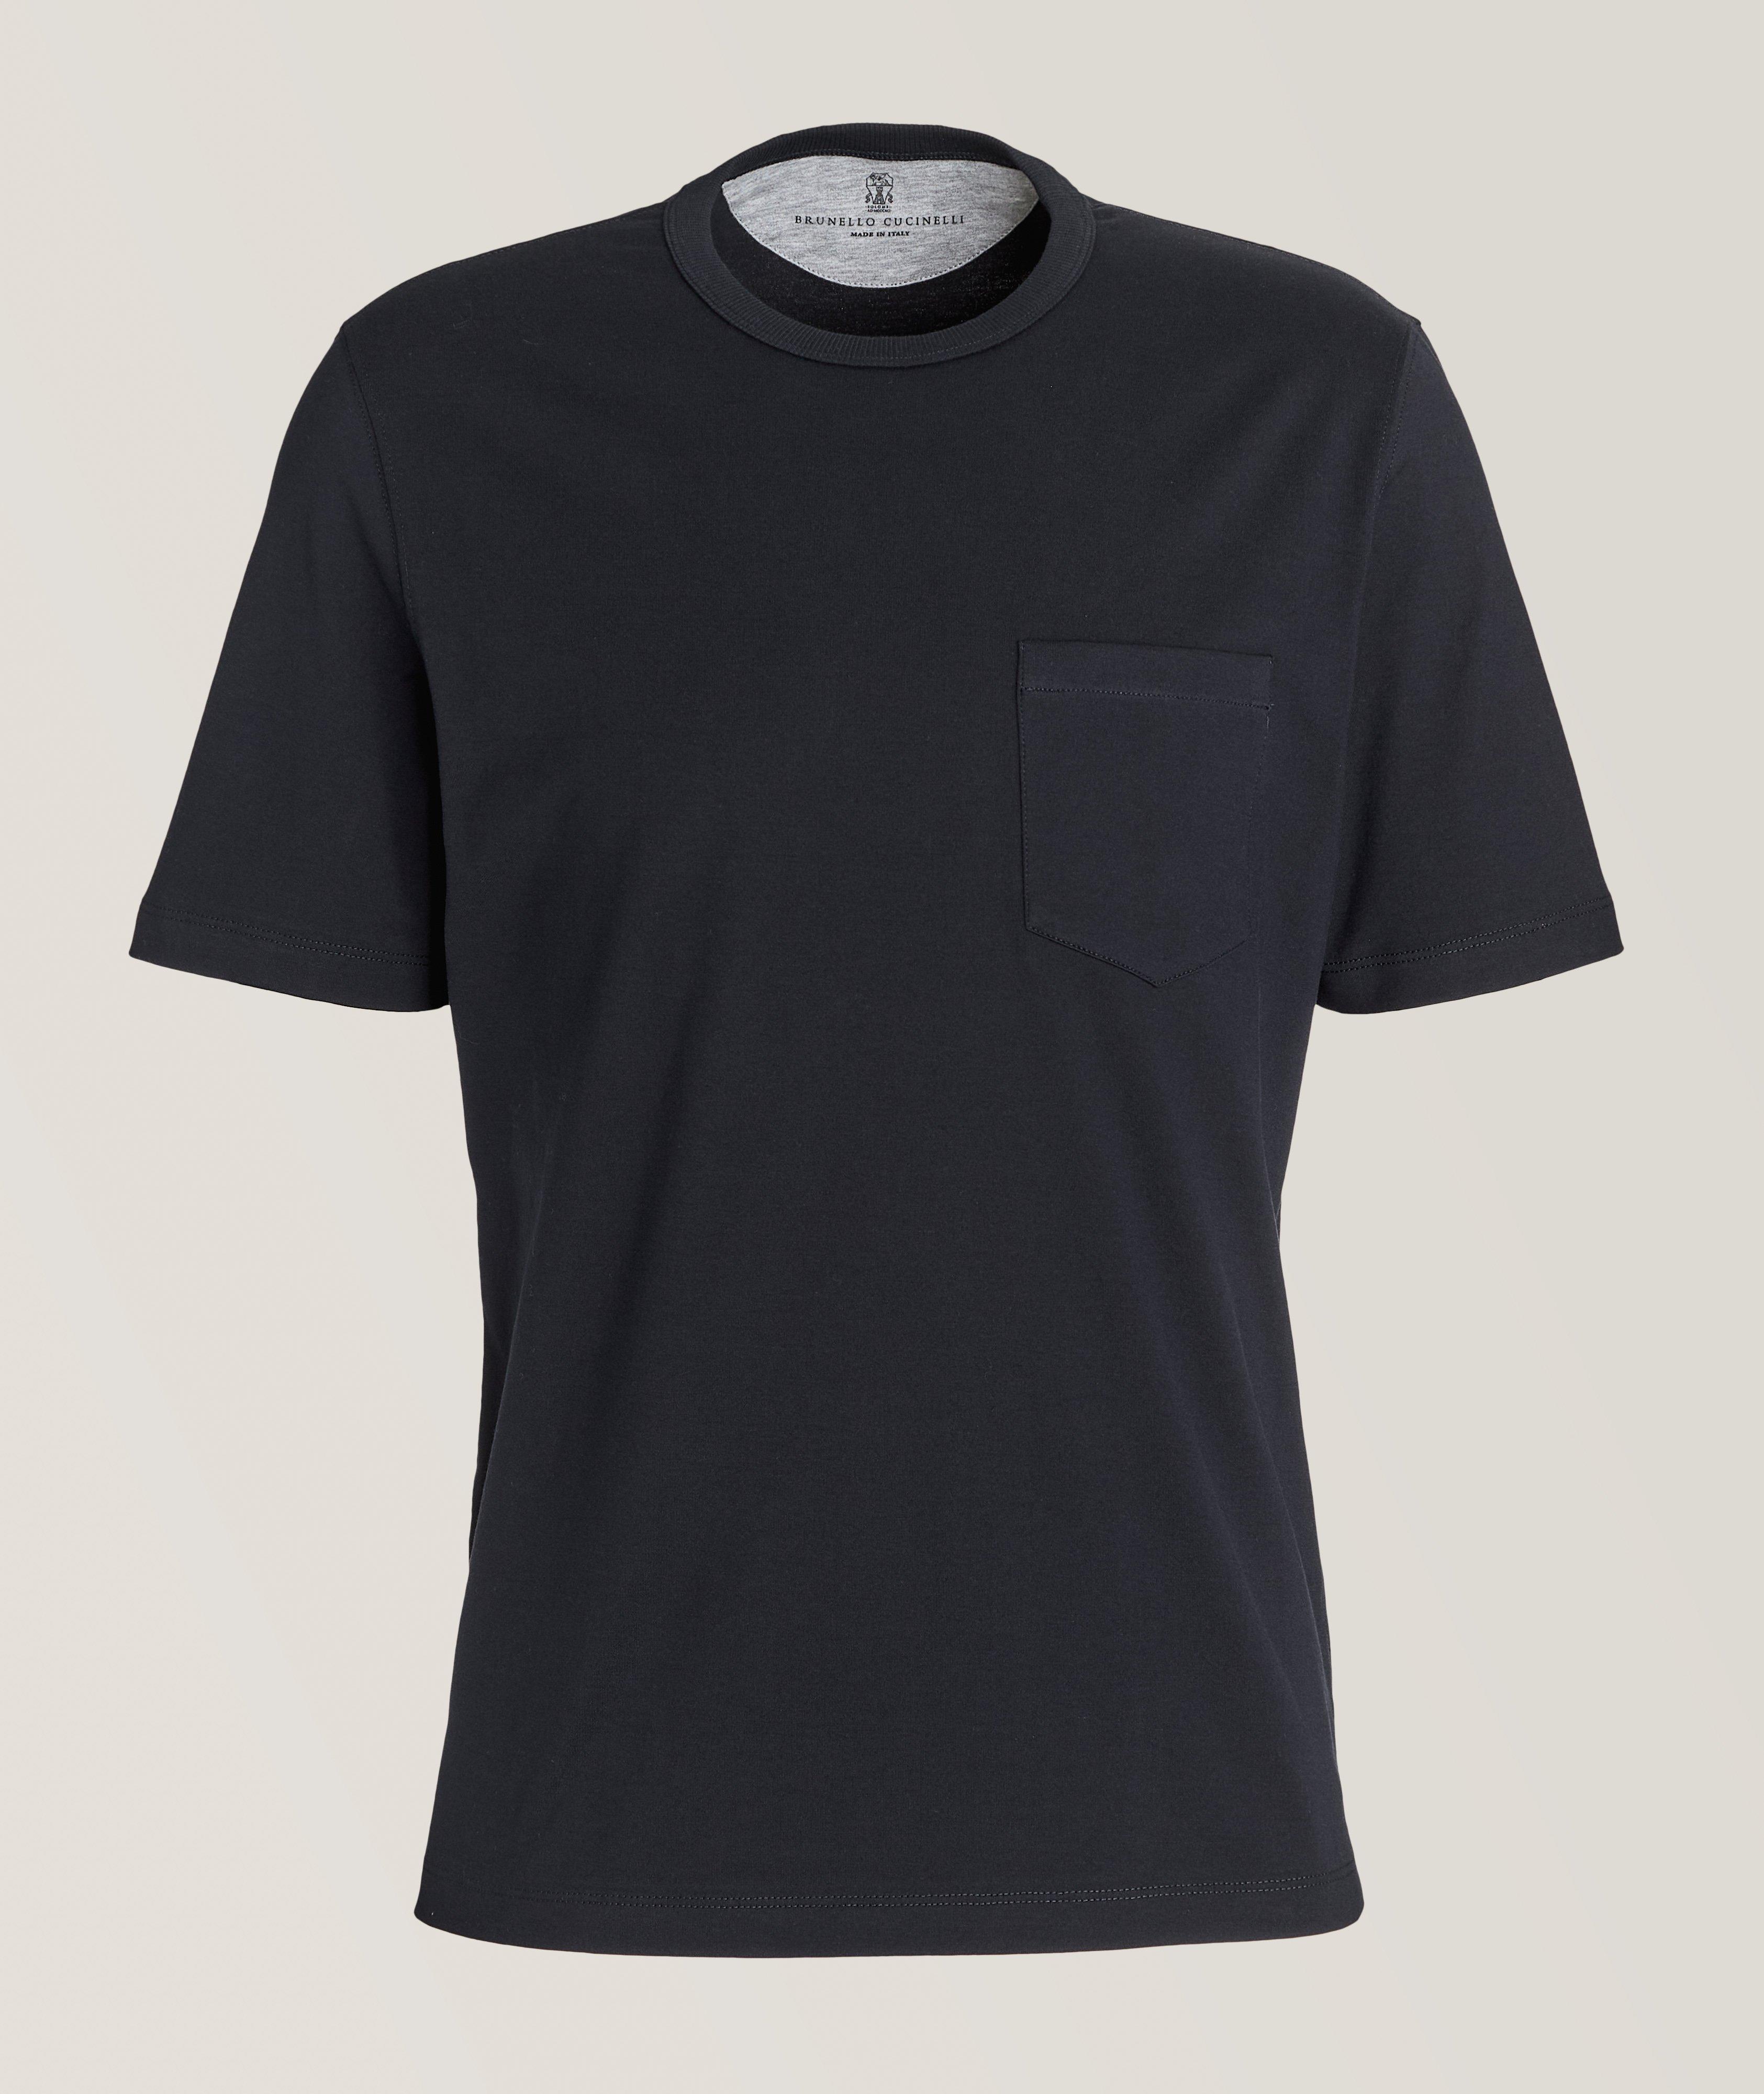 Mélange Cotton T-Shirt image 0